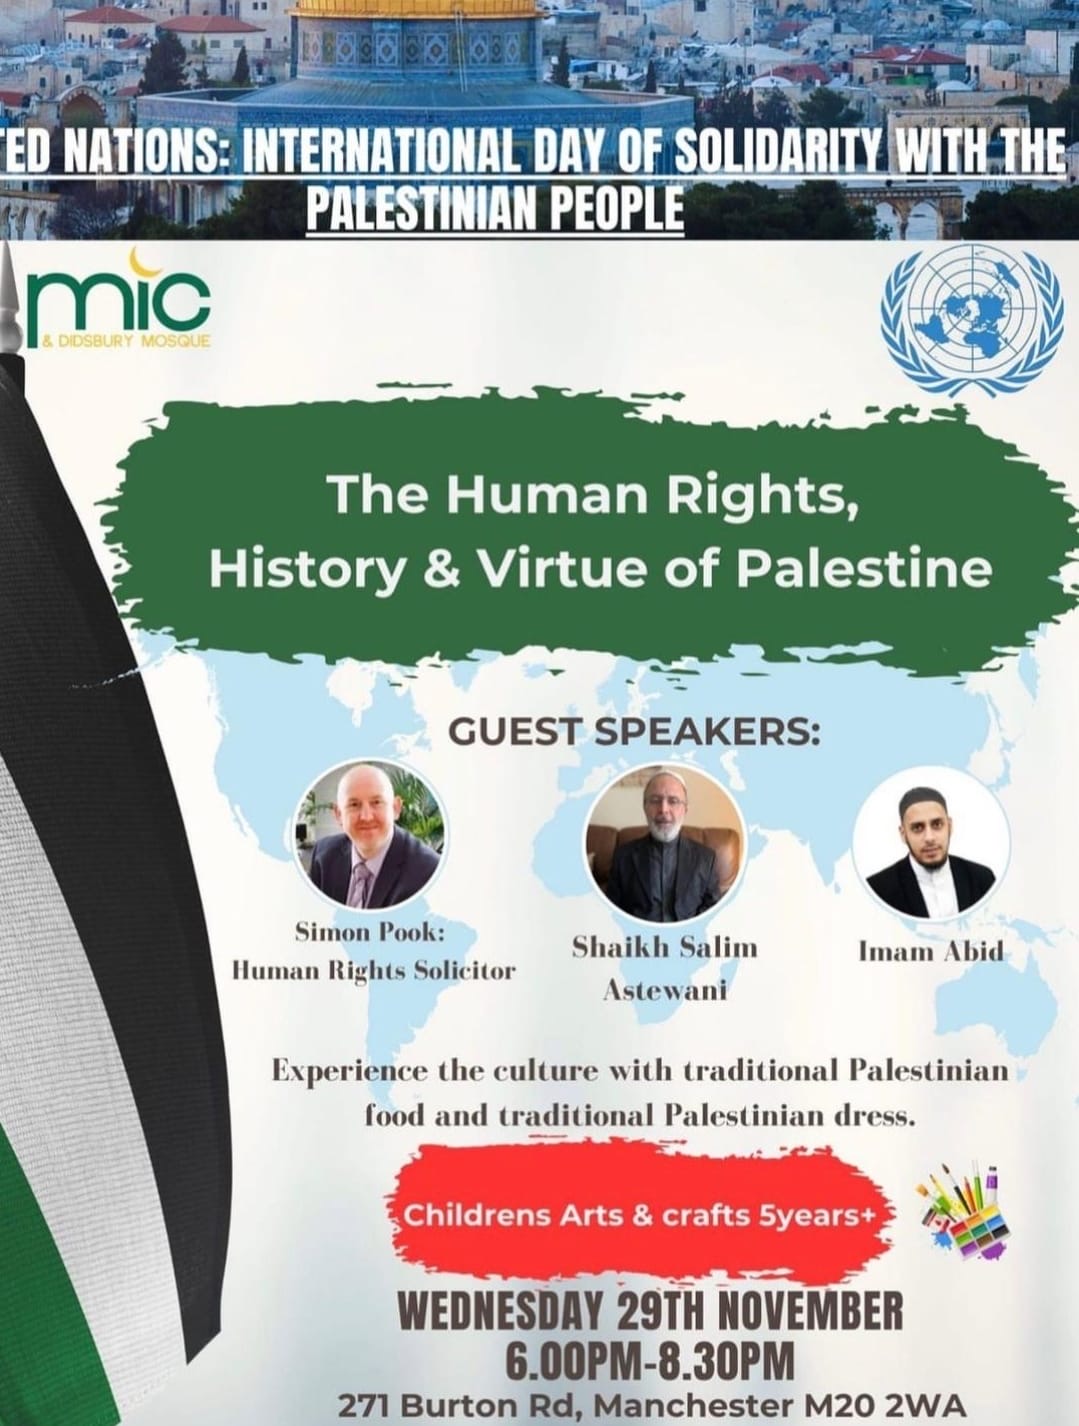 فعالية في مانشستر بمناسبة اليوم العالمي للتضامن مع الشعب الفلسطيني